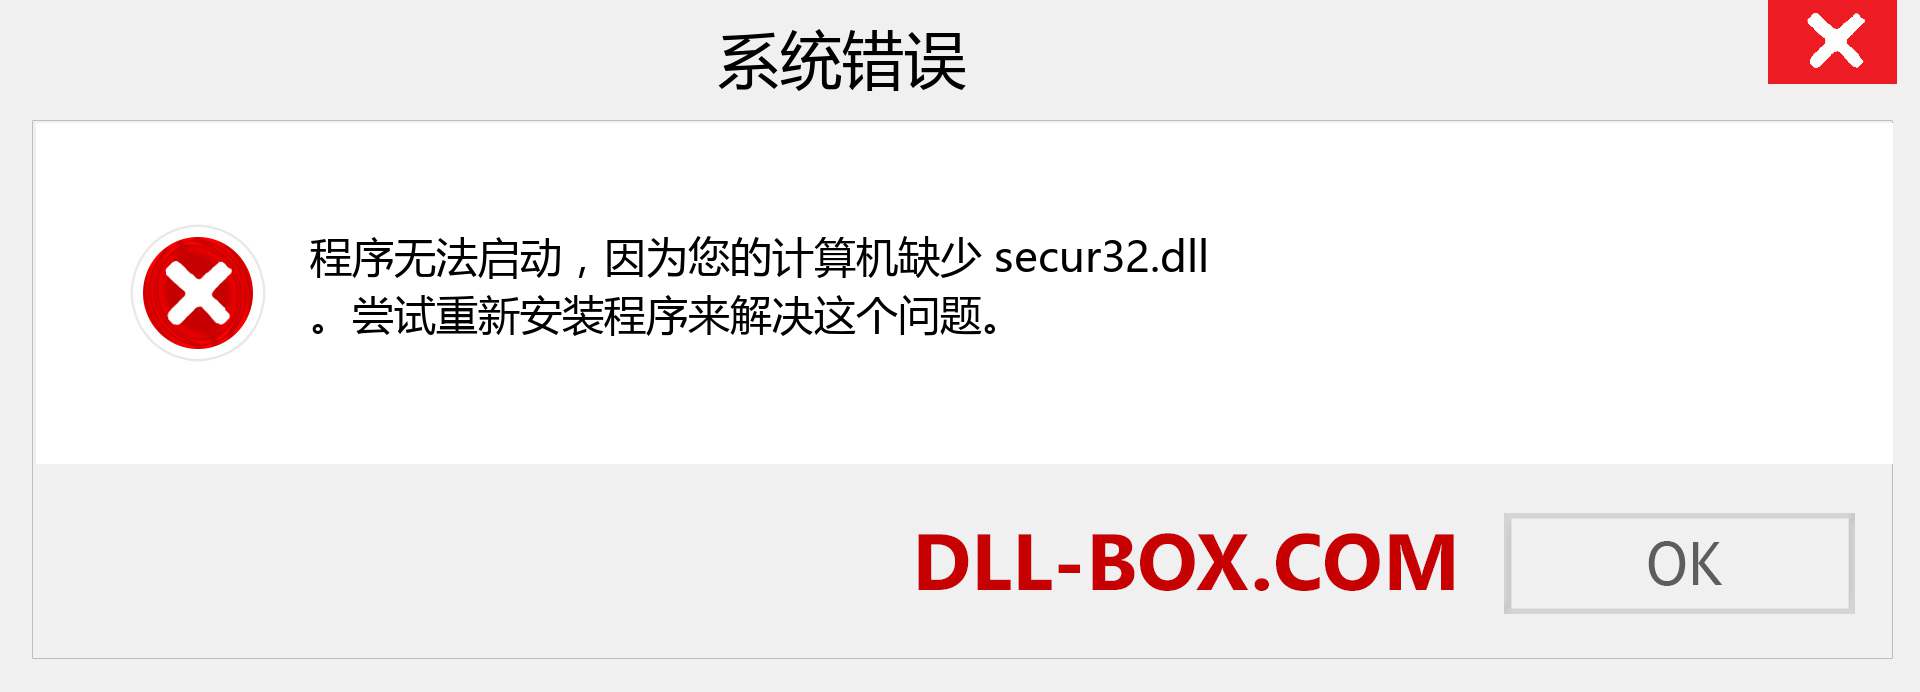 secur32.dll 文件丢失？。 适用于 Windows 7、8、10 的下载 - 修复 Windows、照片、图像上的 secur32 dll 丢失错误